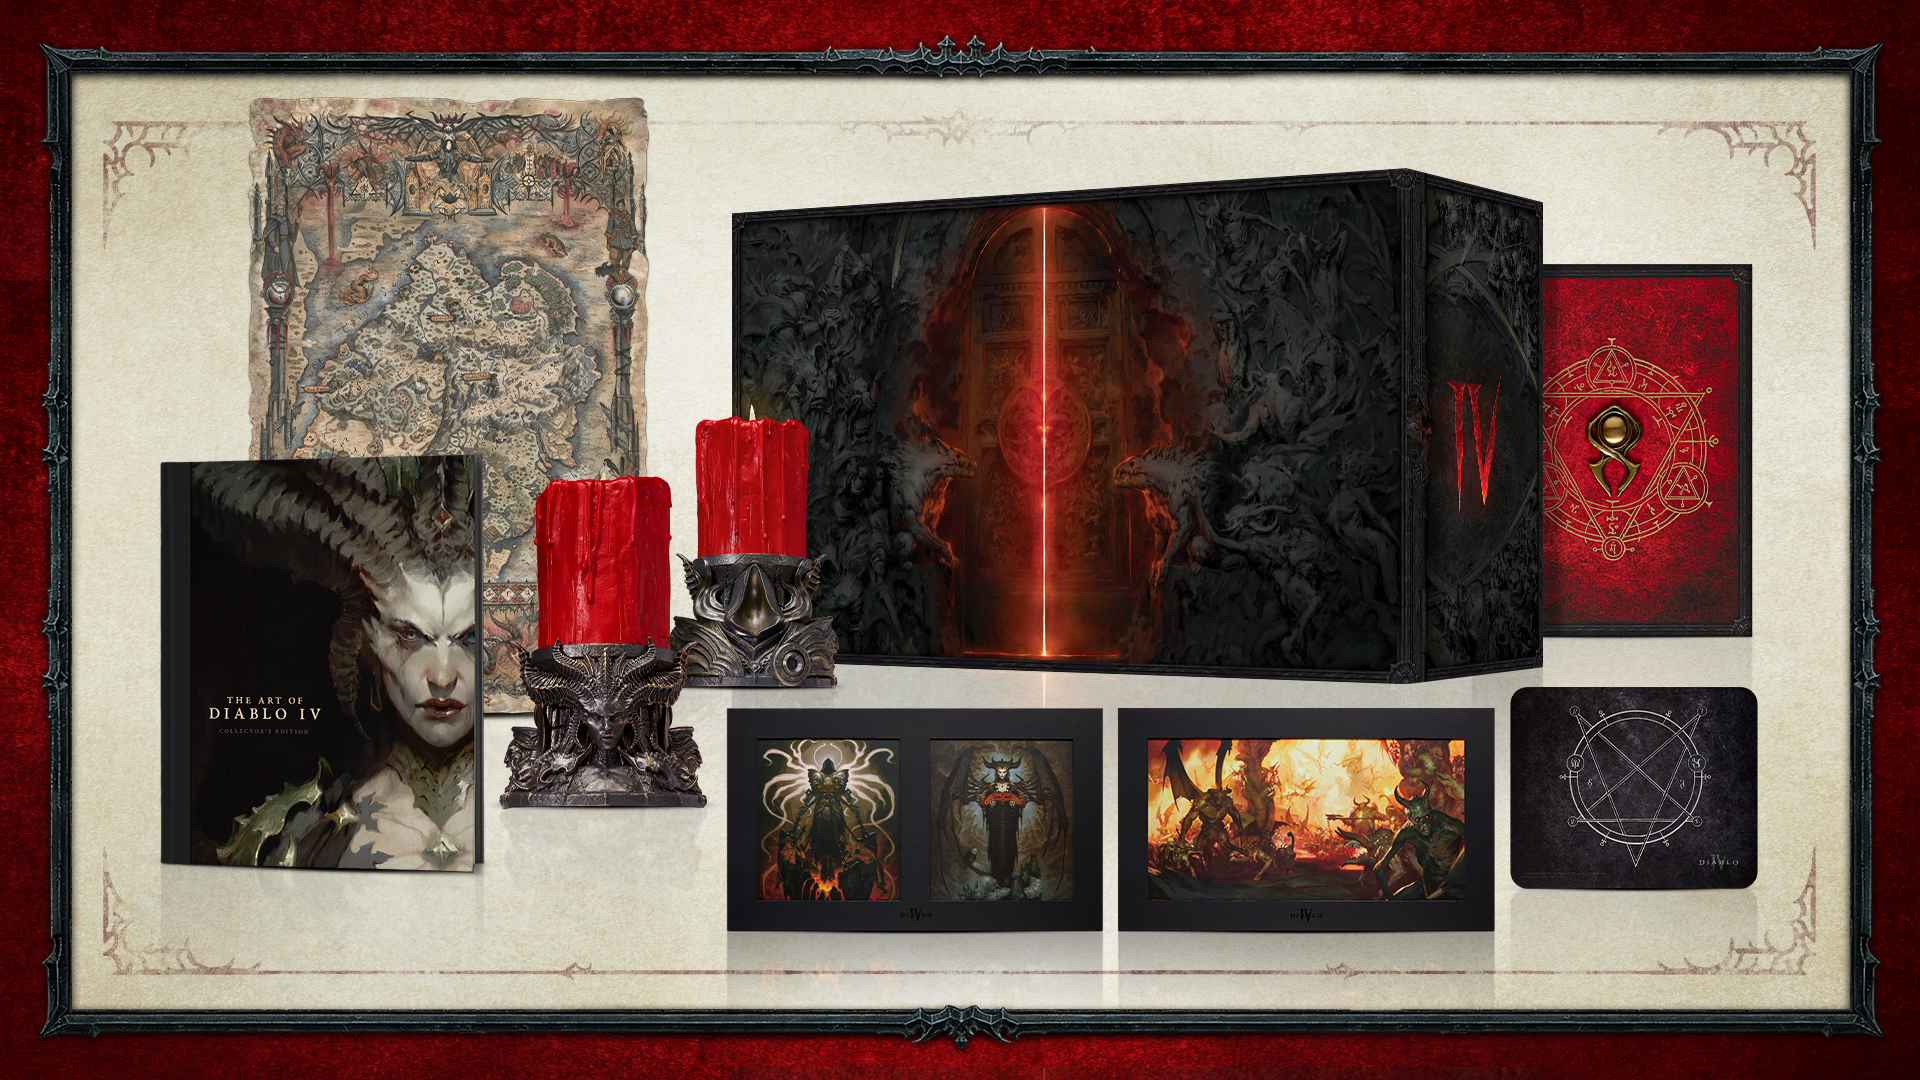 Édition collector Diablo IV (édition limitée)